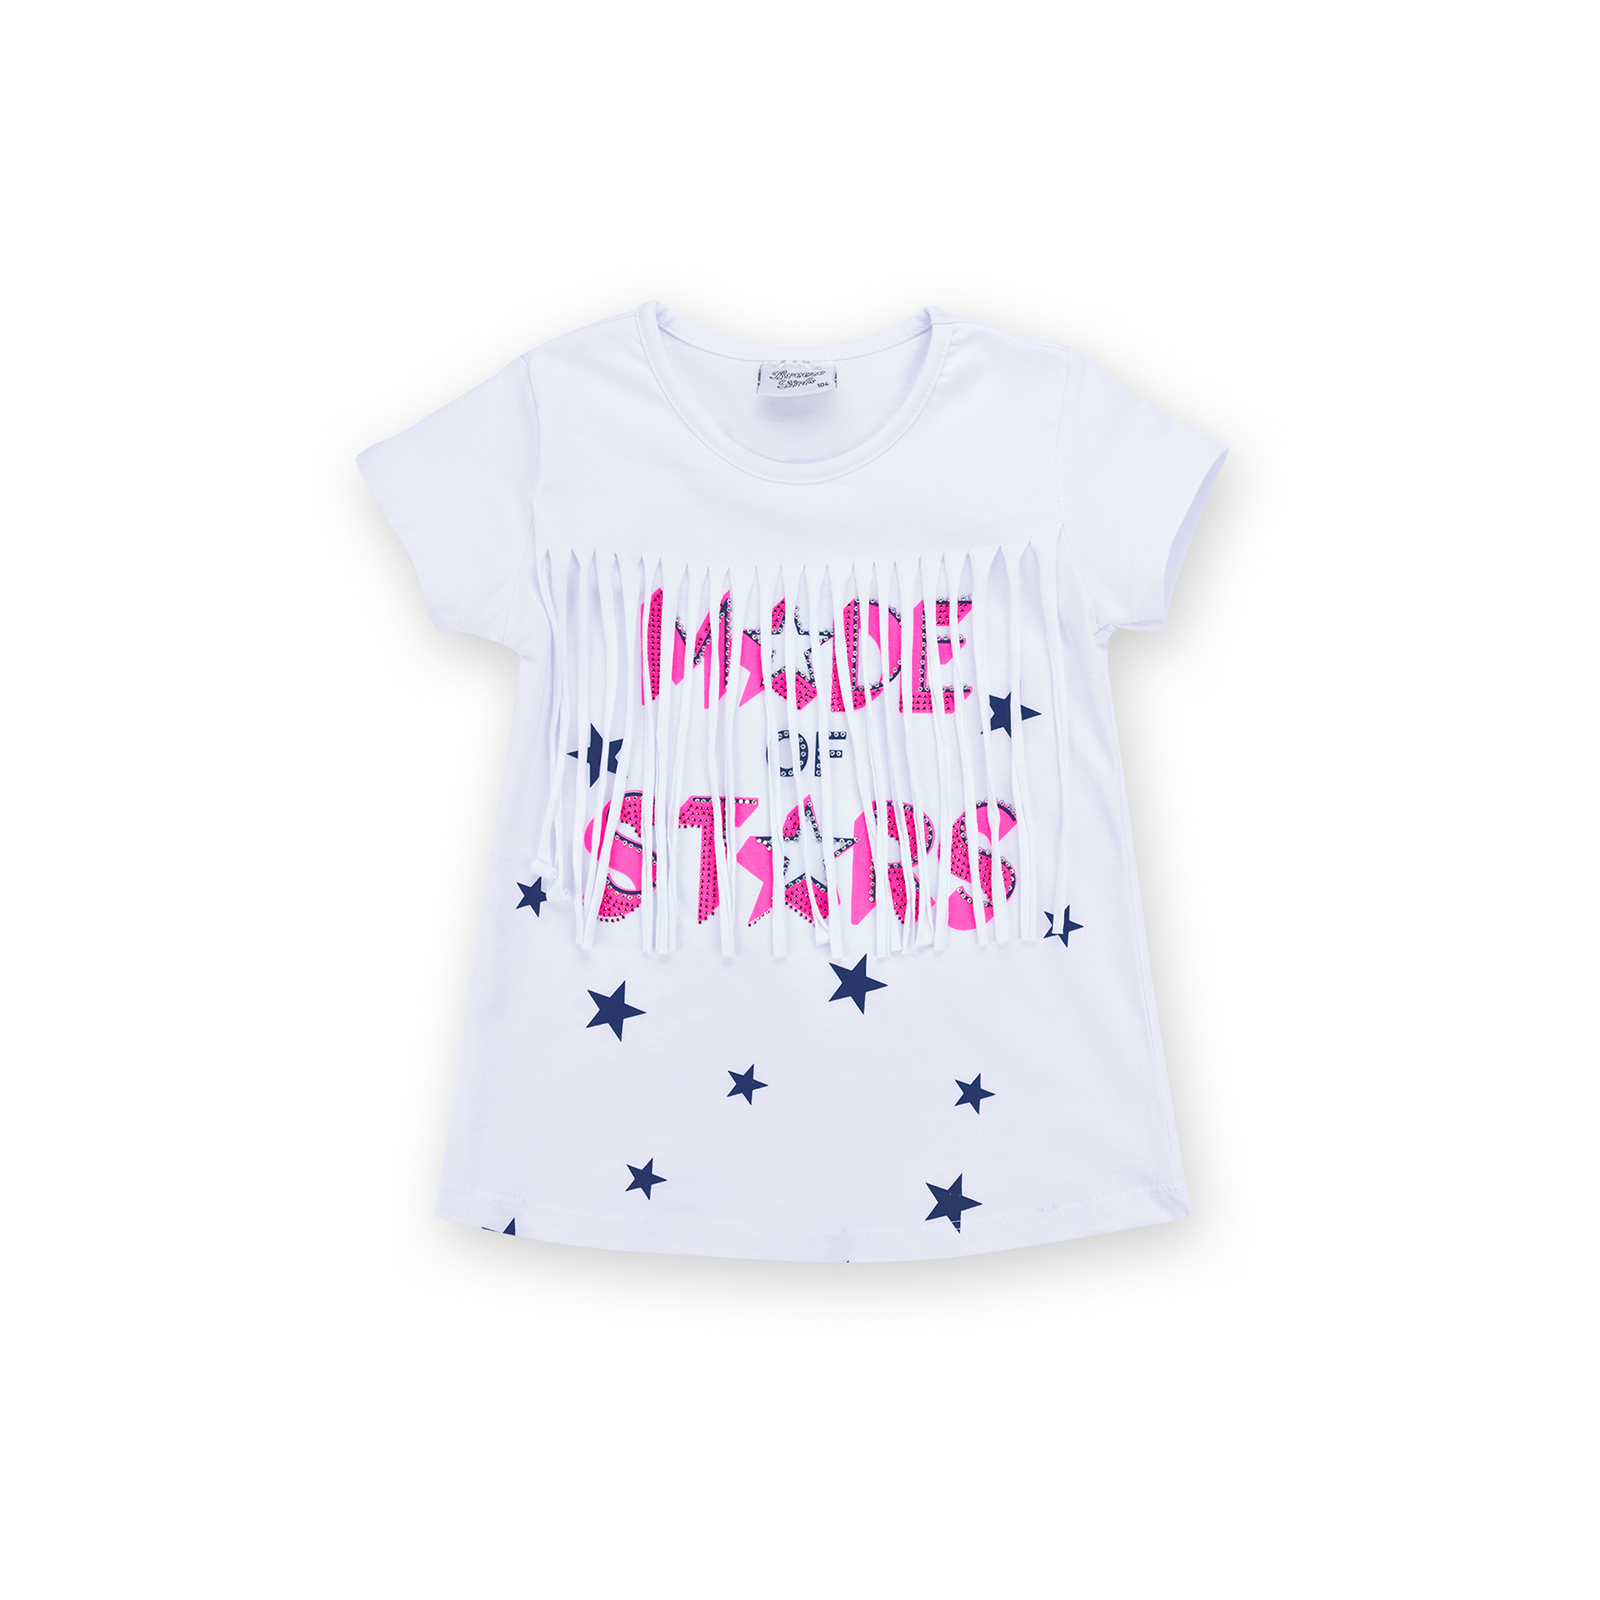 Набор детской одежды Breeze футболка со звездочками с шортами (9036-98G-white) изображение 2